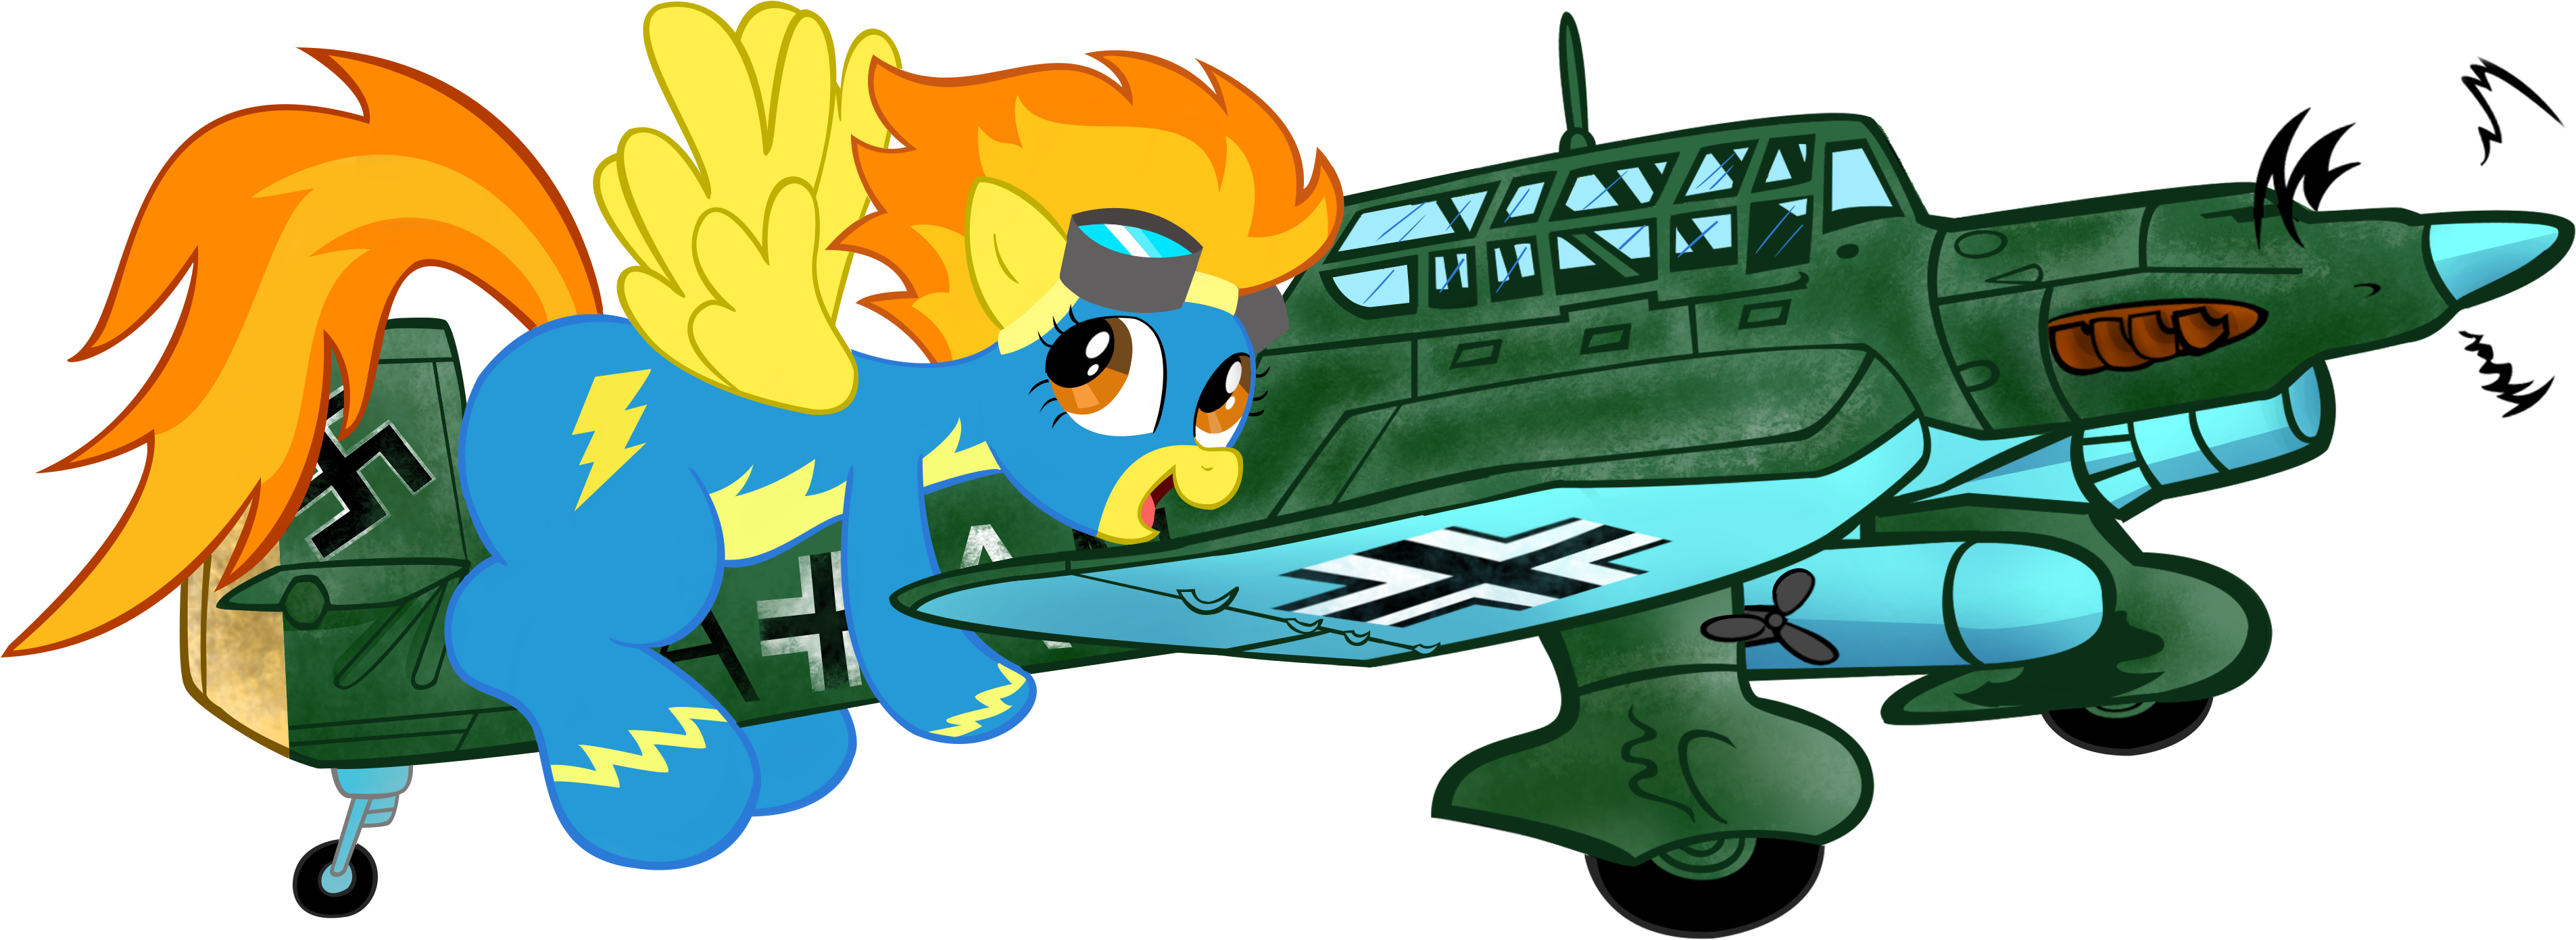 Waffengrunt, Giant Pony, Ju-87, Plane, Pony, Riding, - Cartoon (3856x1585)